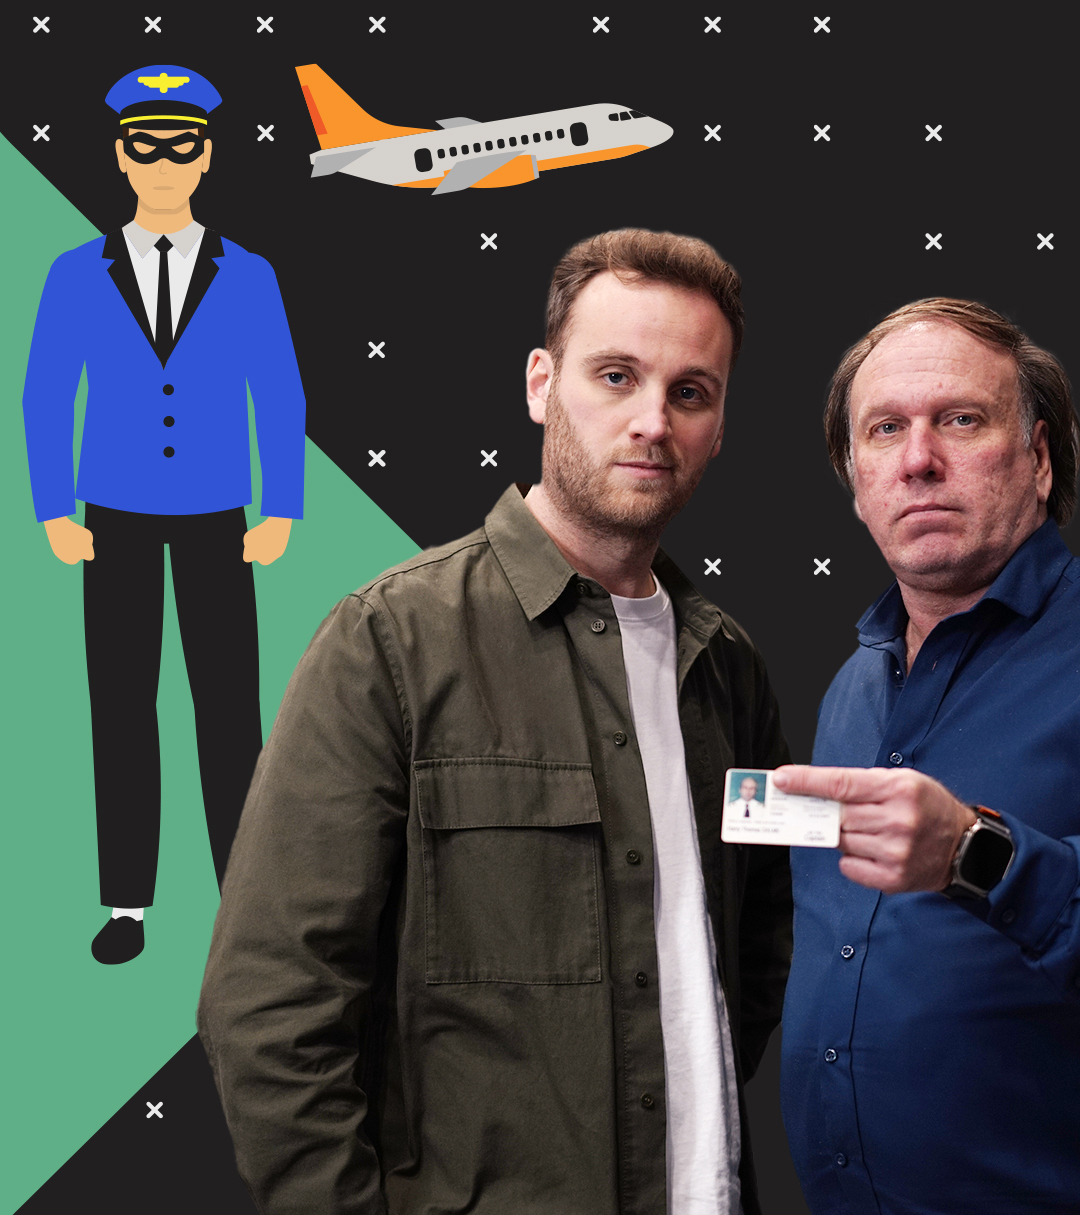 Leon Windscheid steht neben einem Mann, der einen Pass ins Bild zeigt. Dahinter sind ein Pilot in Pilotuniform und ein fliegendes Flugzeug abgebildet.